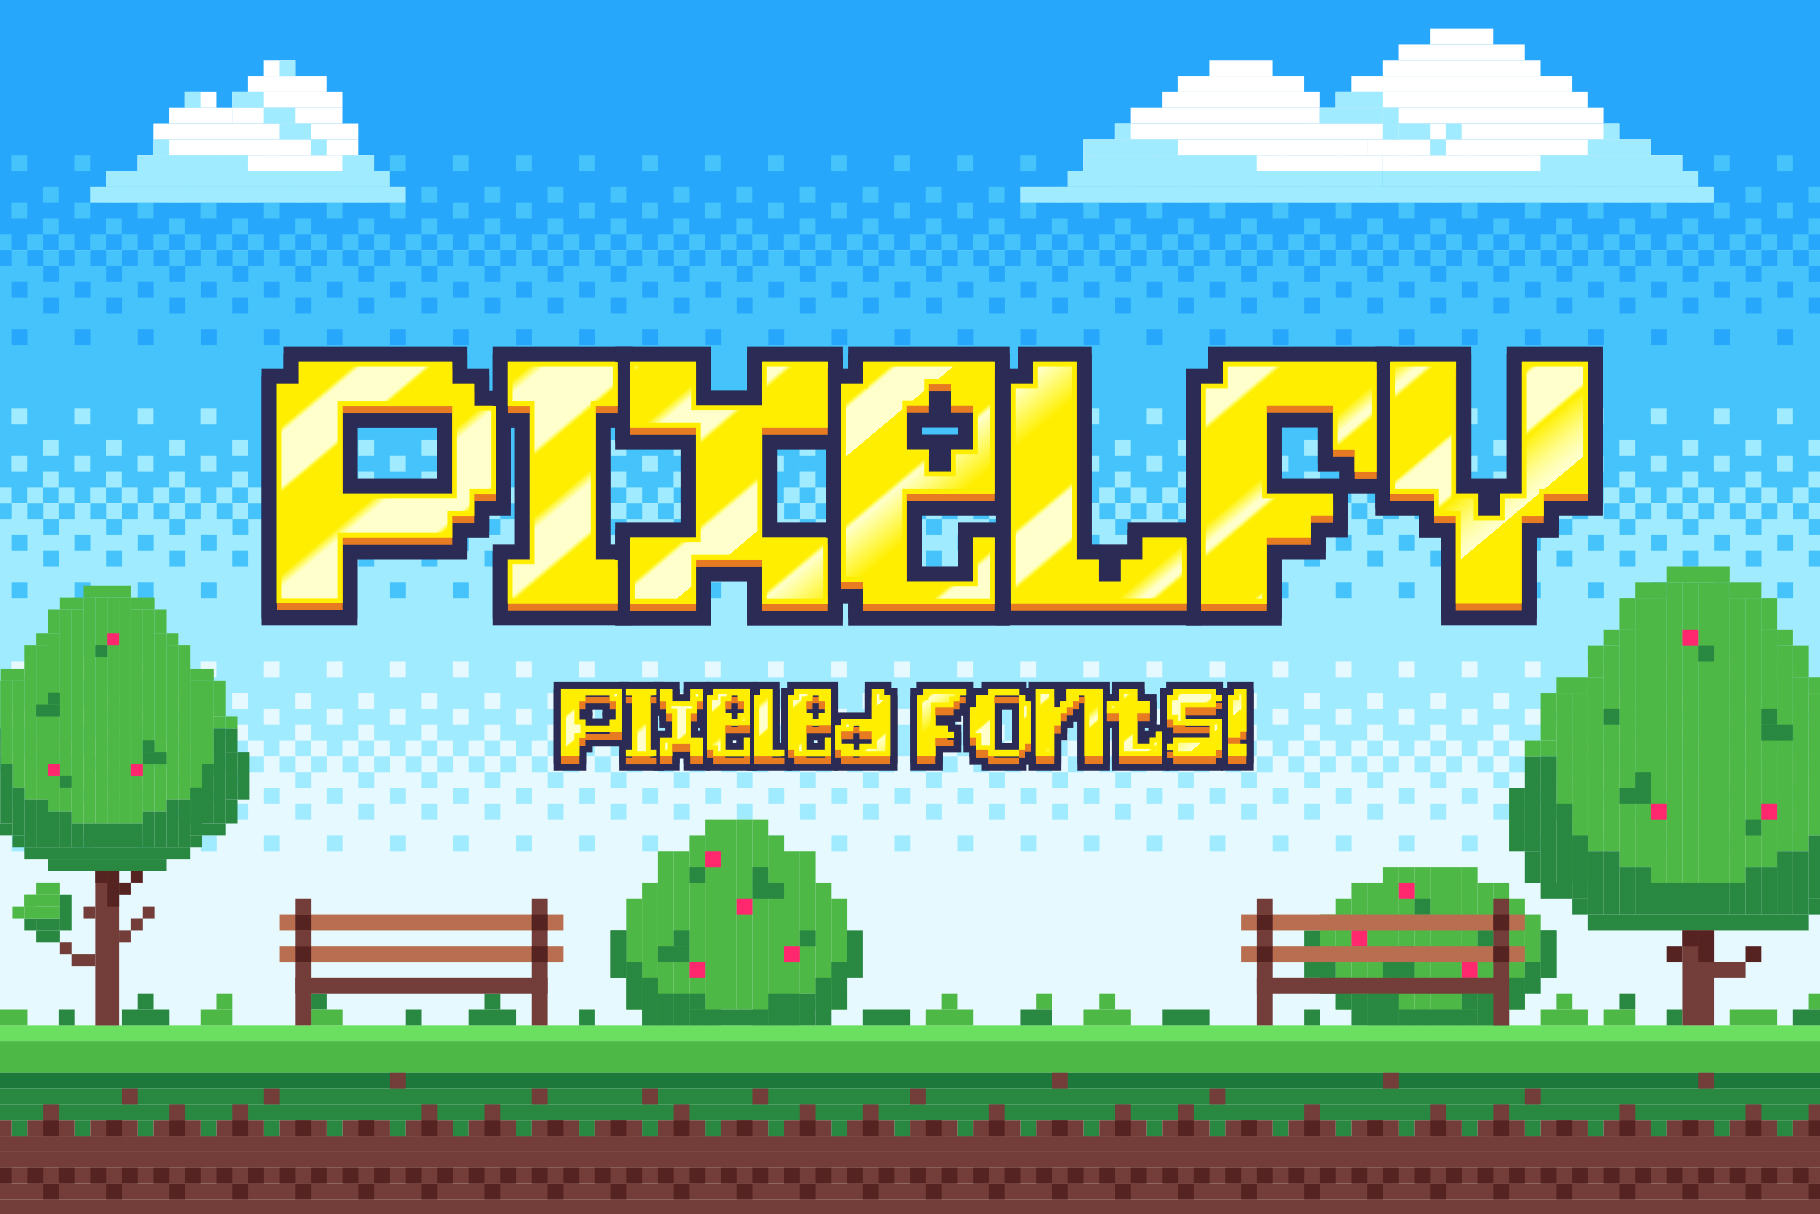 Pixelfy